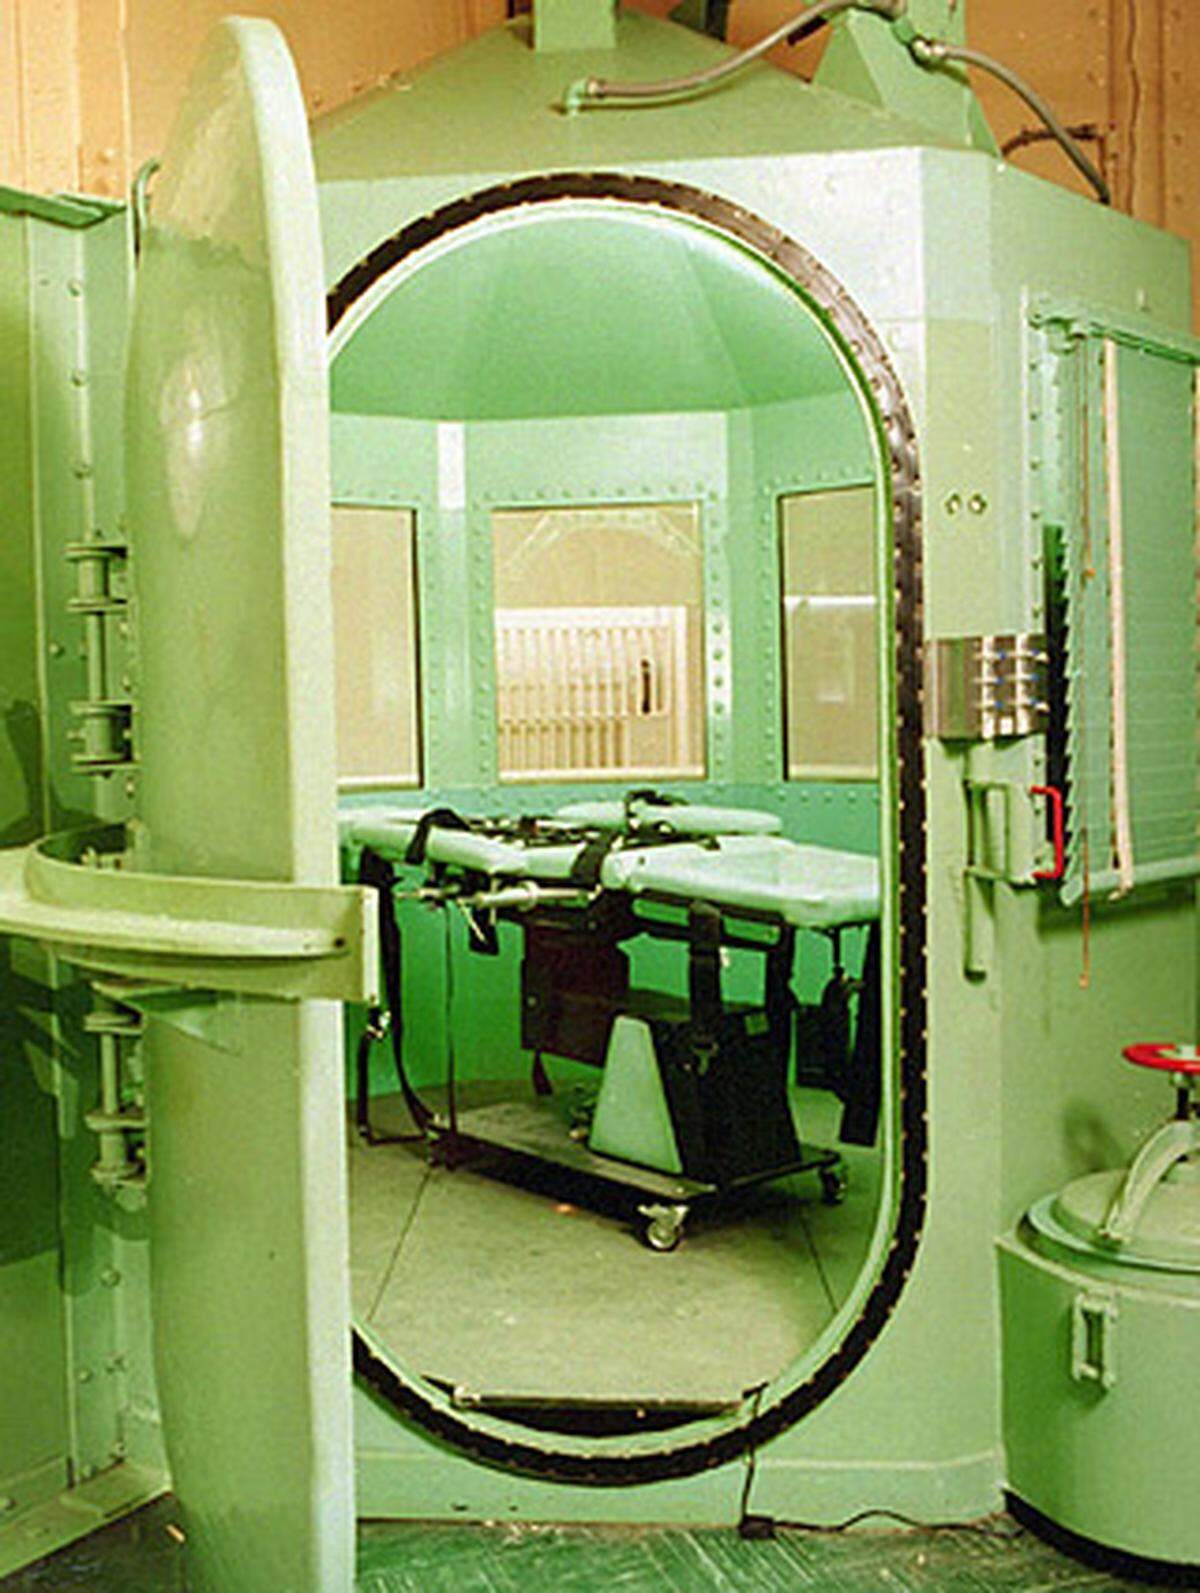 Der Oberste Gerichtshof erklärte die Todesstrafe 1972 für verfassungswidrig. Nach der bundesweiten Abschaffung wurde sie 1976 jedoch erneut zugelassen.Im Bild: Die Exekutionskammer des San Quentin Staatsgefängnises in Kalifornien.